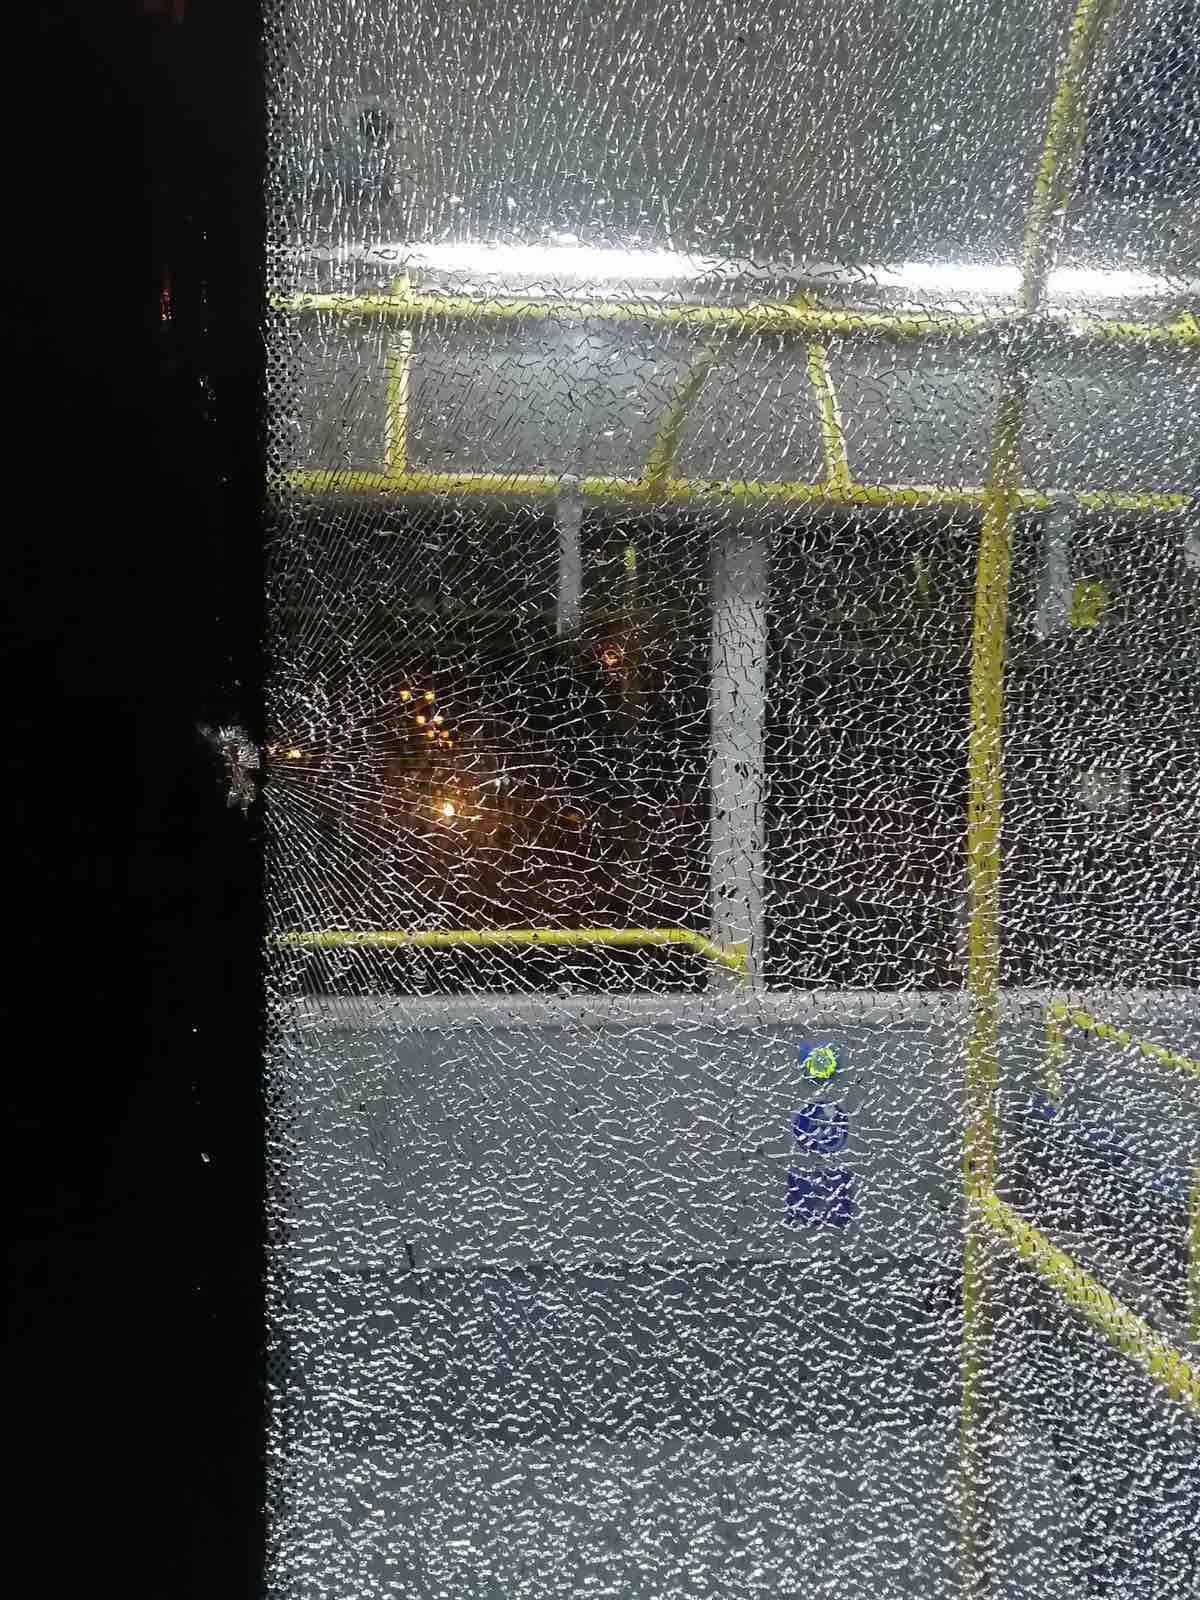 Usljed vandalskog čina, polomljeno staklo na novom gradskom autobusu